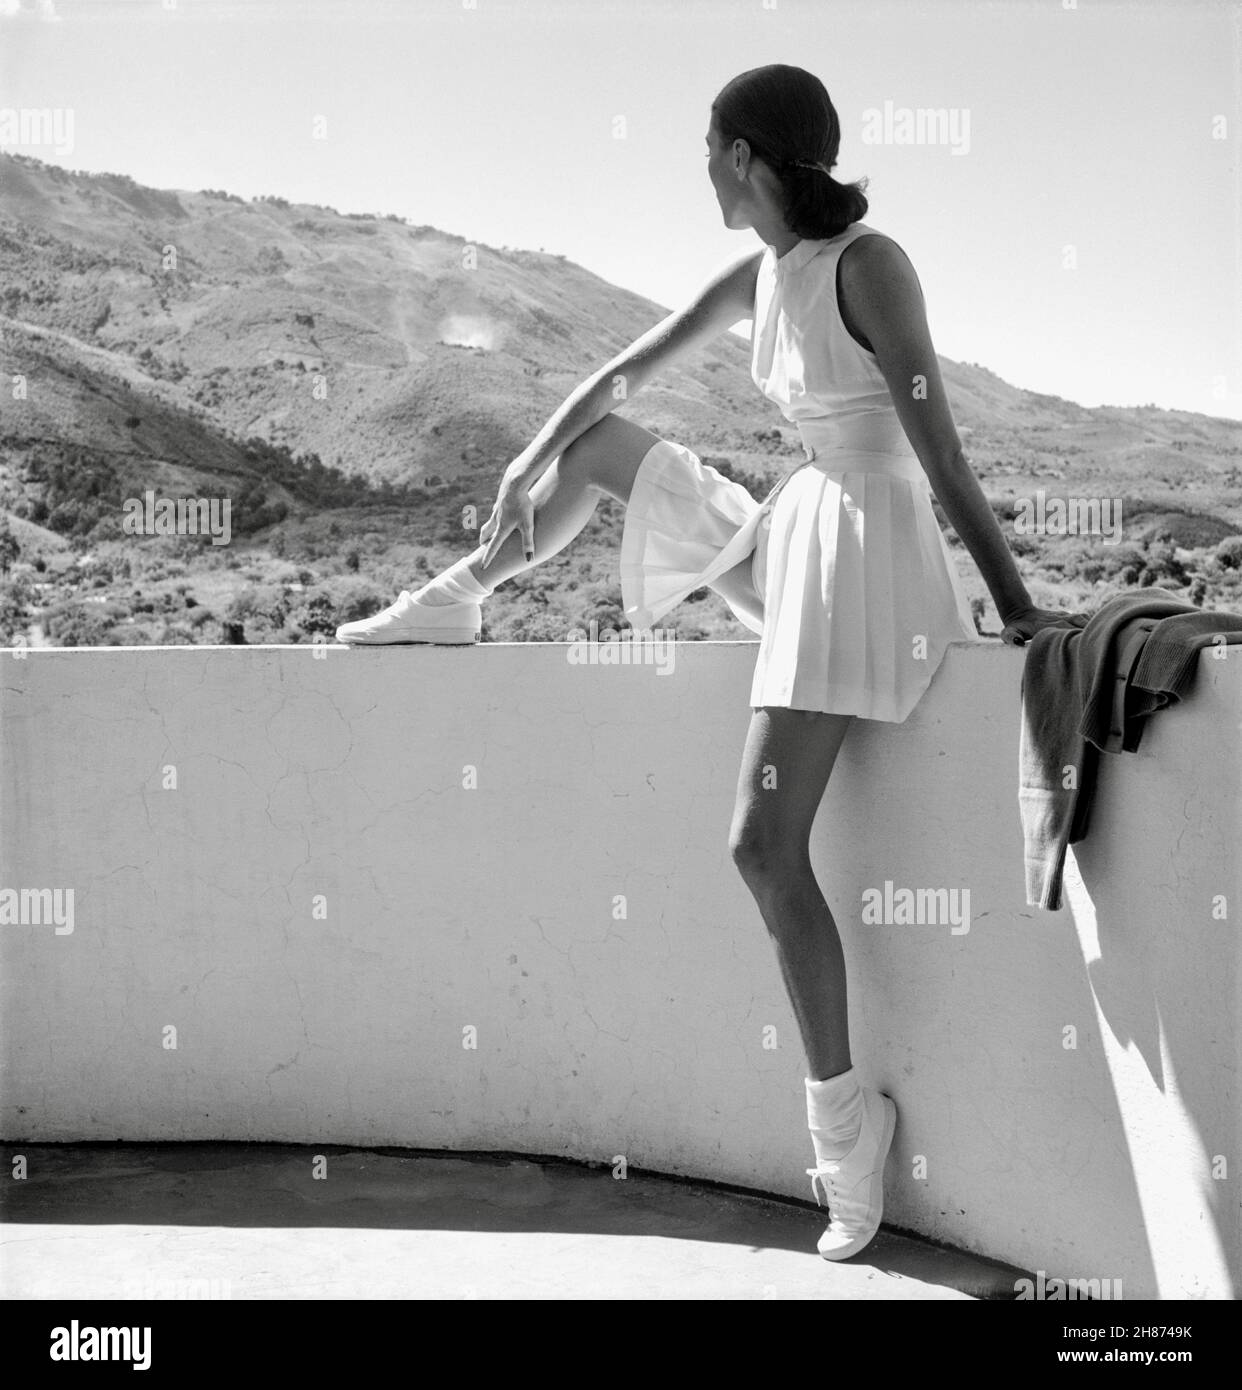 Toni Frisell - Frau im Tennis-Outfit sitzt und blickt in die bergige Landschaft - 1947 Stockfoto